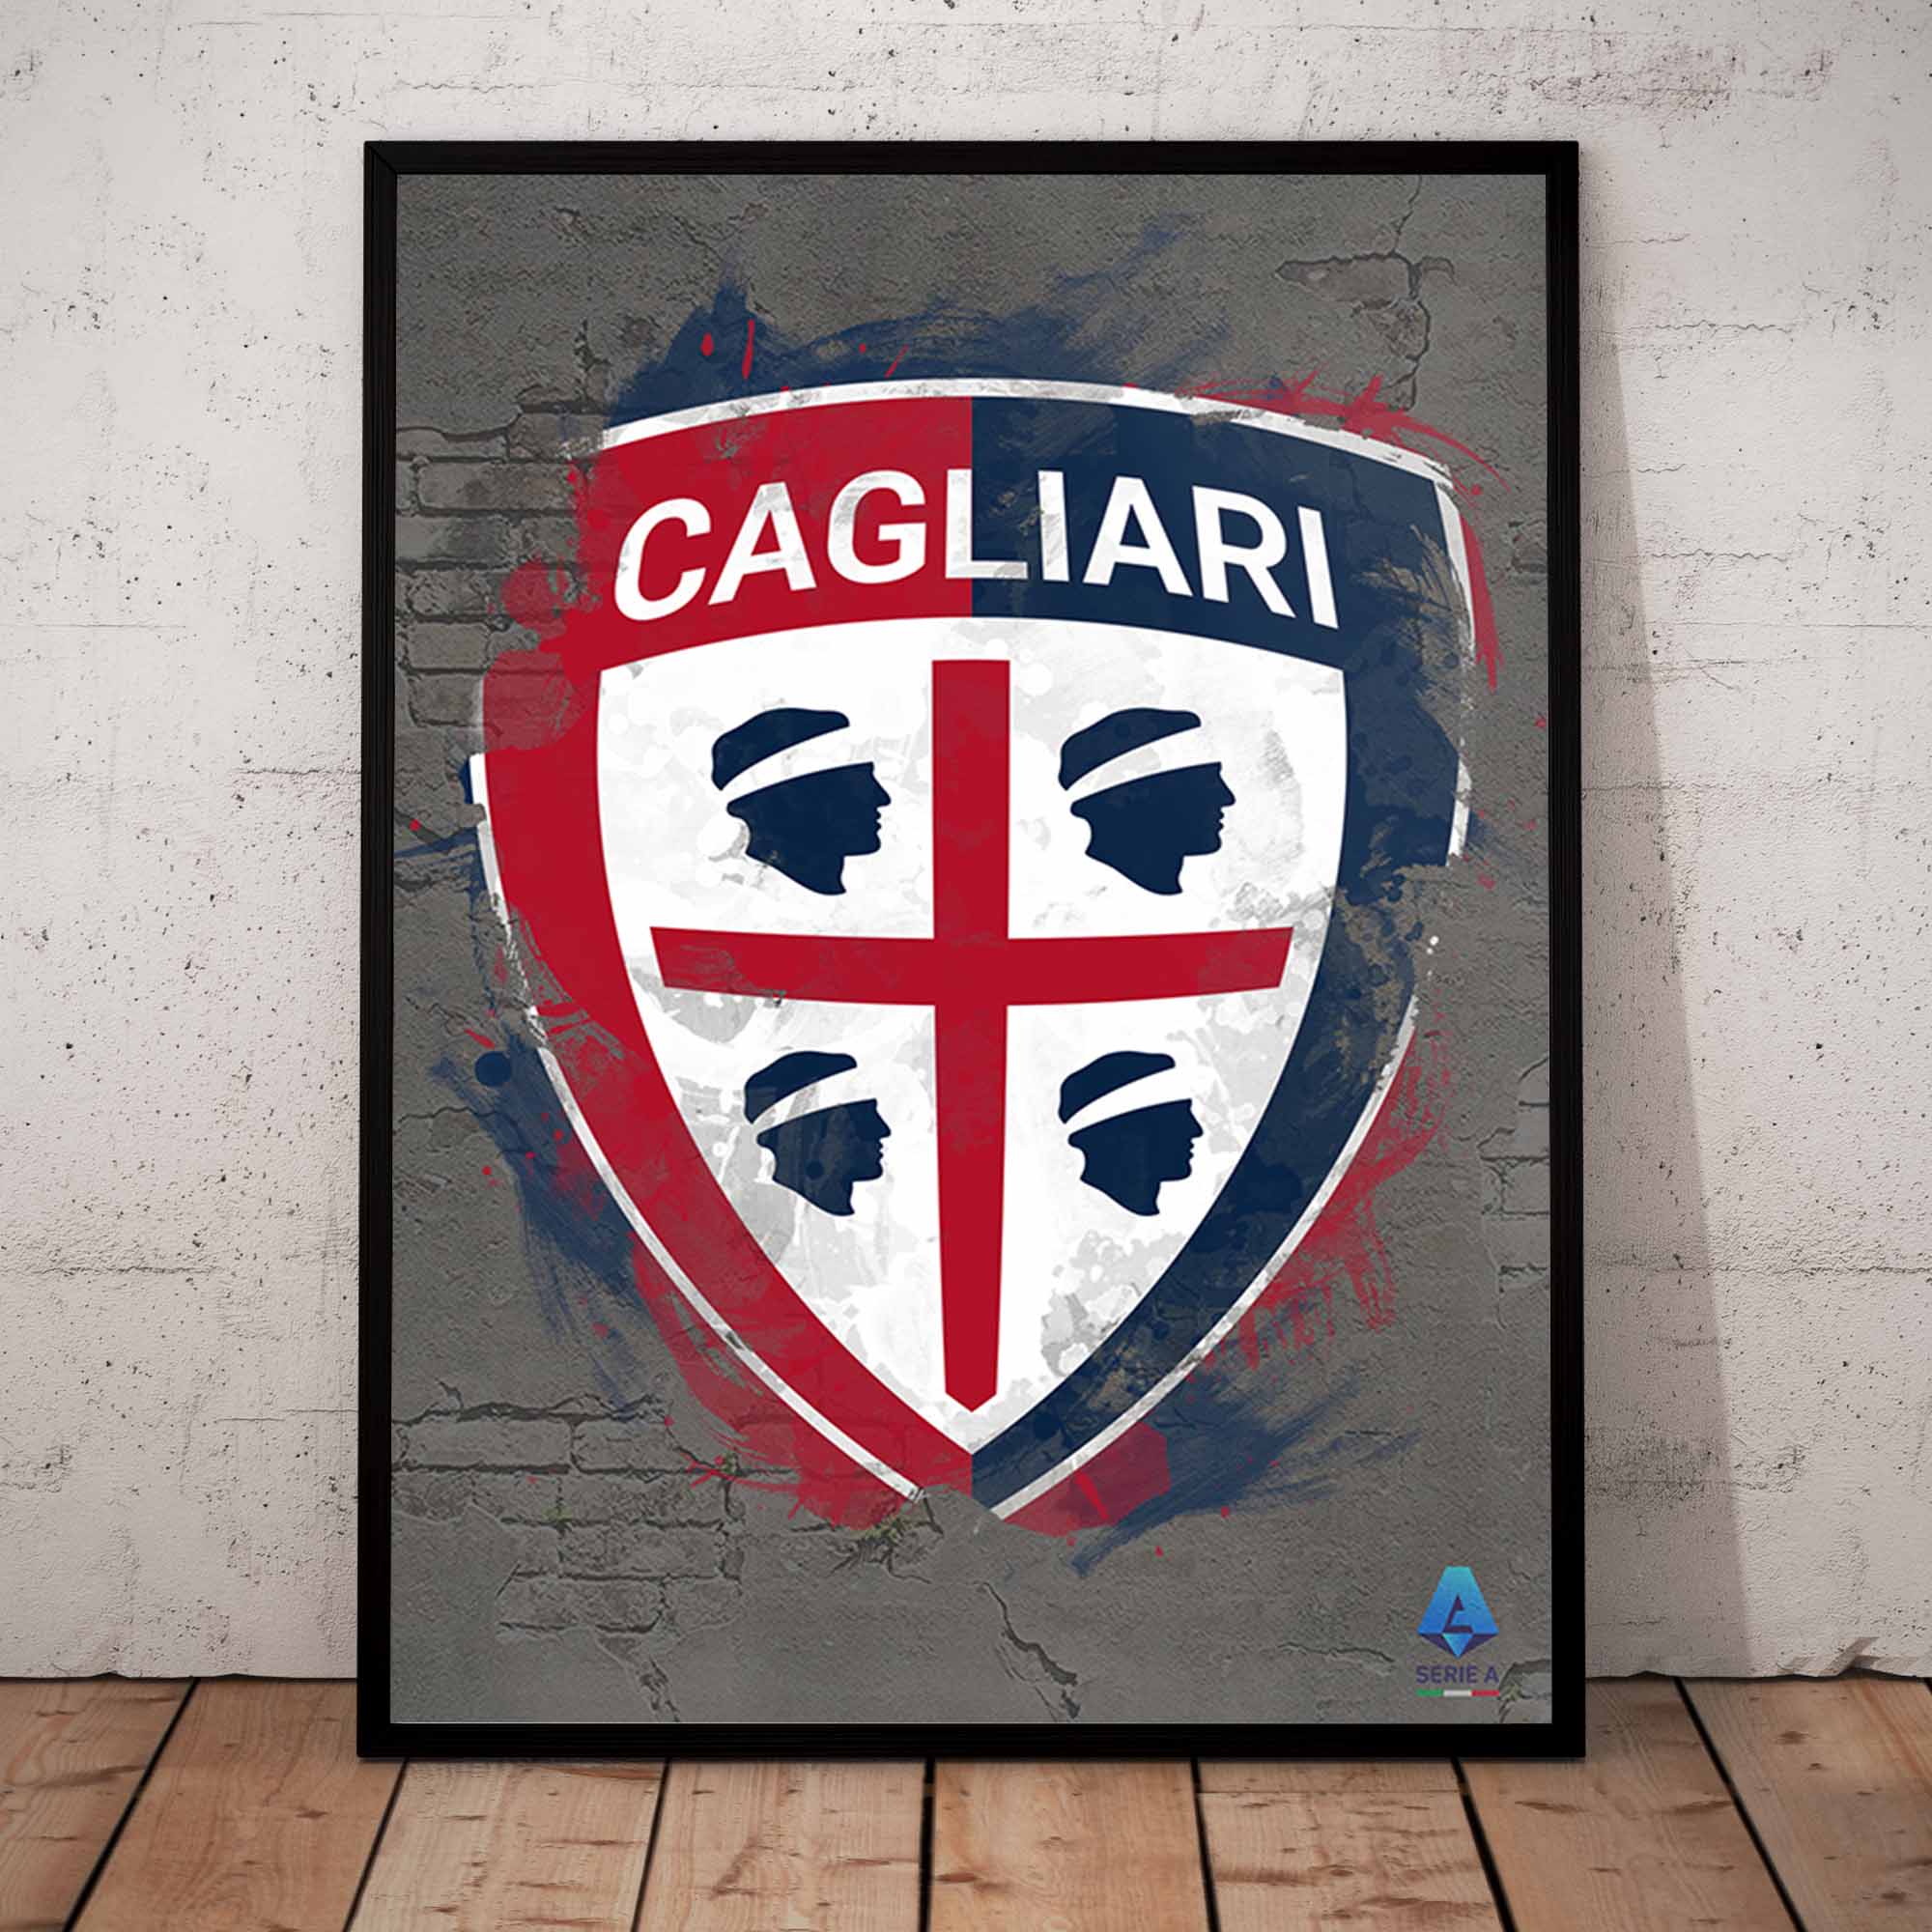 Cagliari 2 - Poster in front